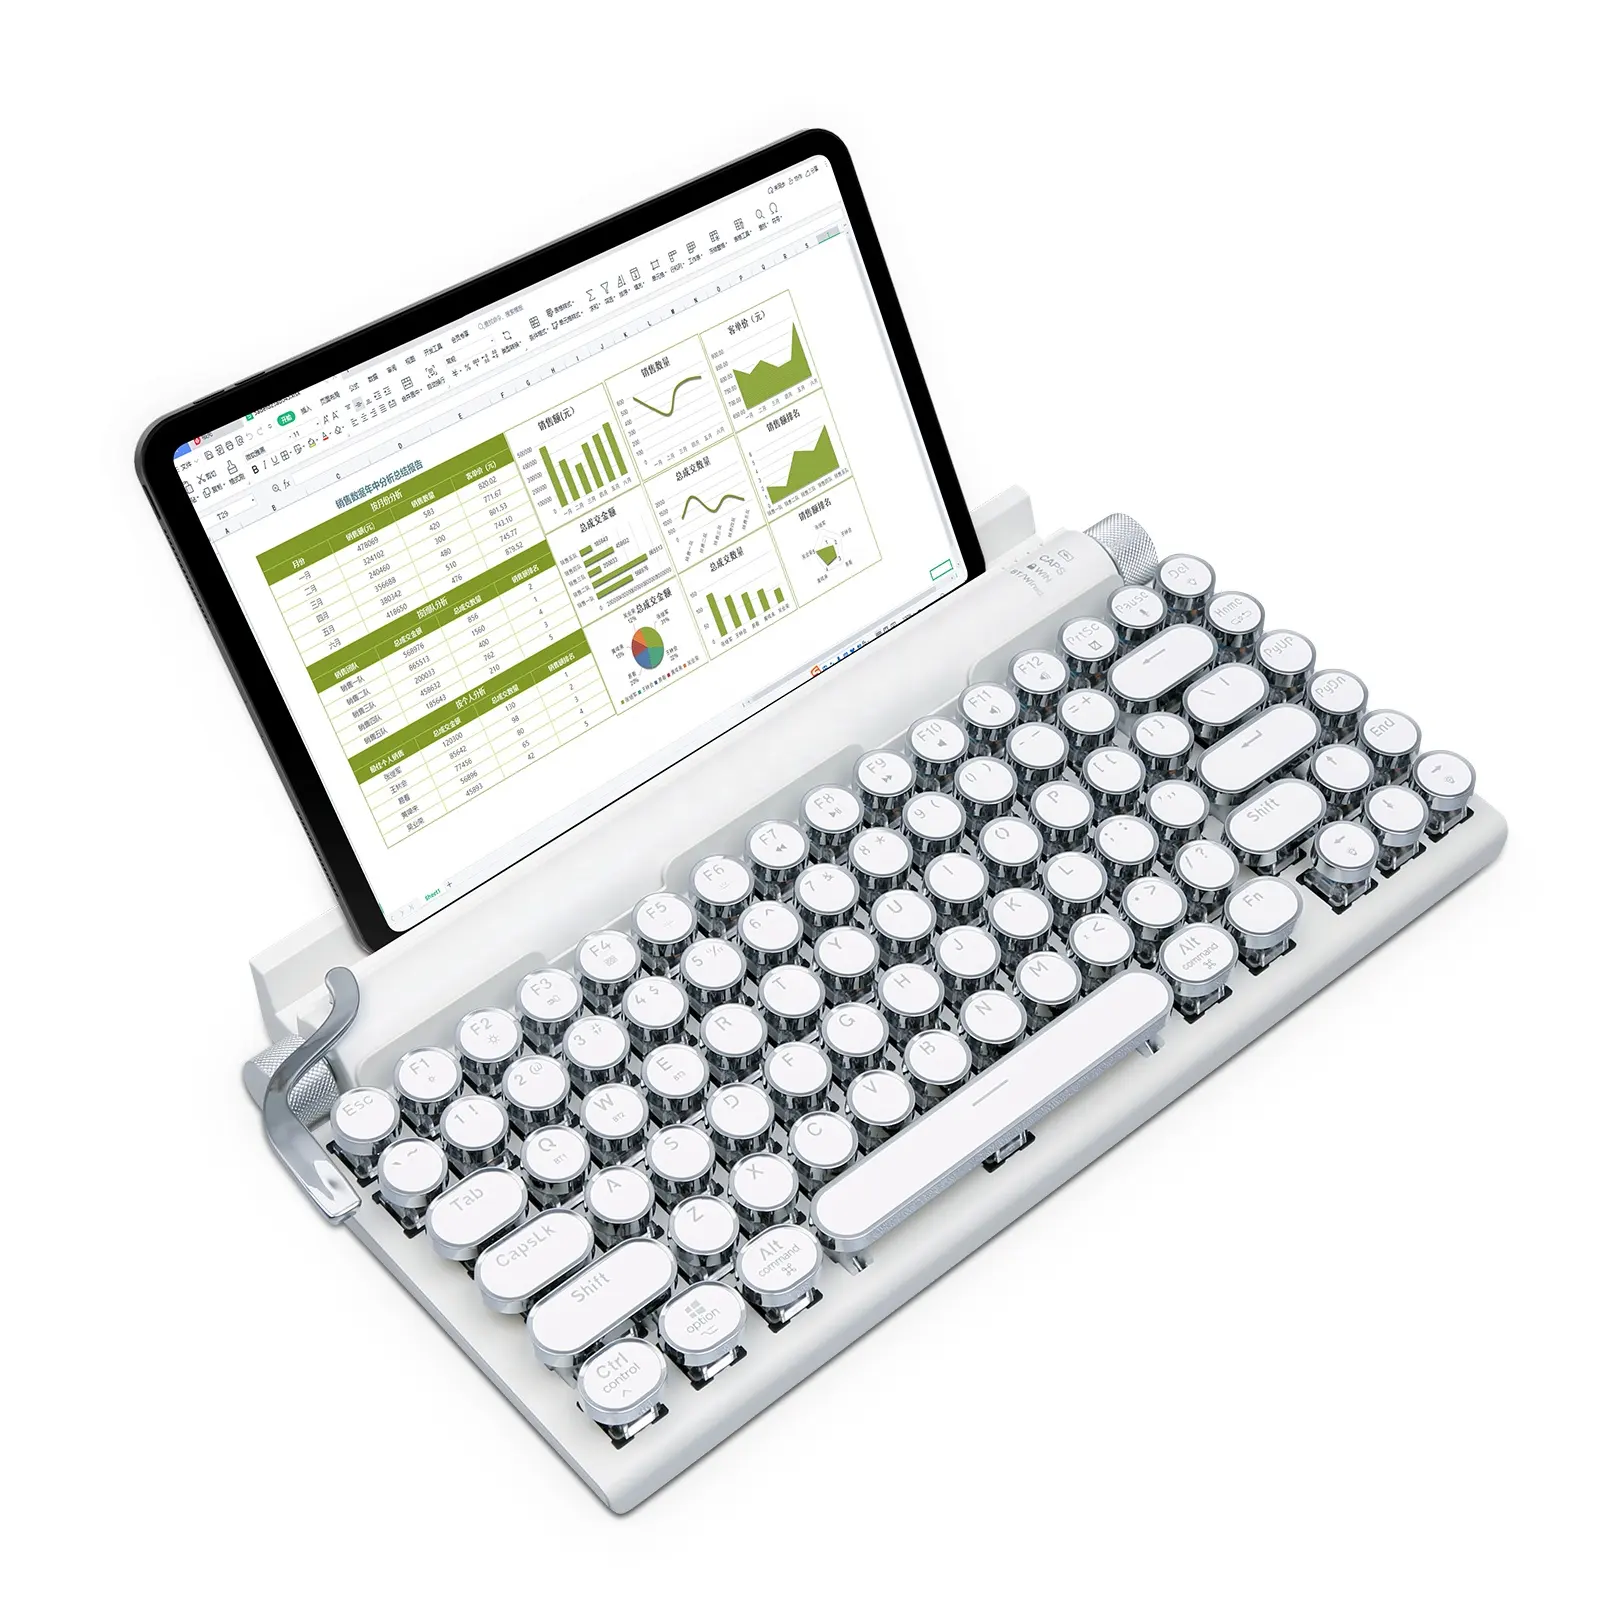 Tasarruf spot OUTEMU Hotswap mavi anahtarı klasik Punk klavye tuş takımı kablosuz daktilo tarzı mekanik oyun klavye Tablet